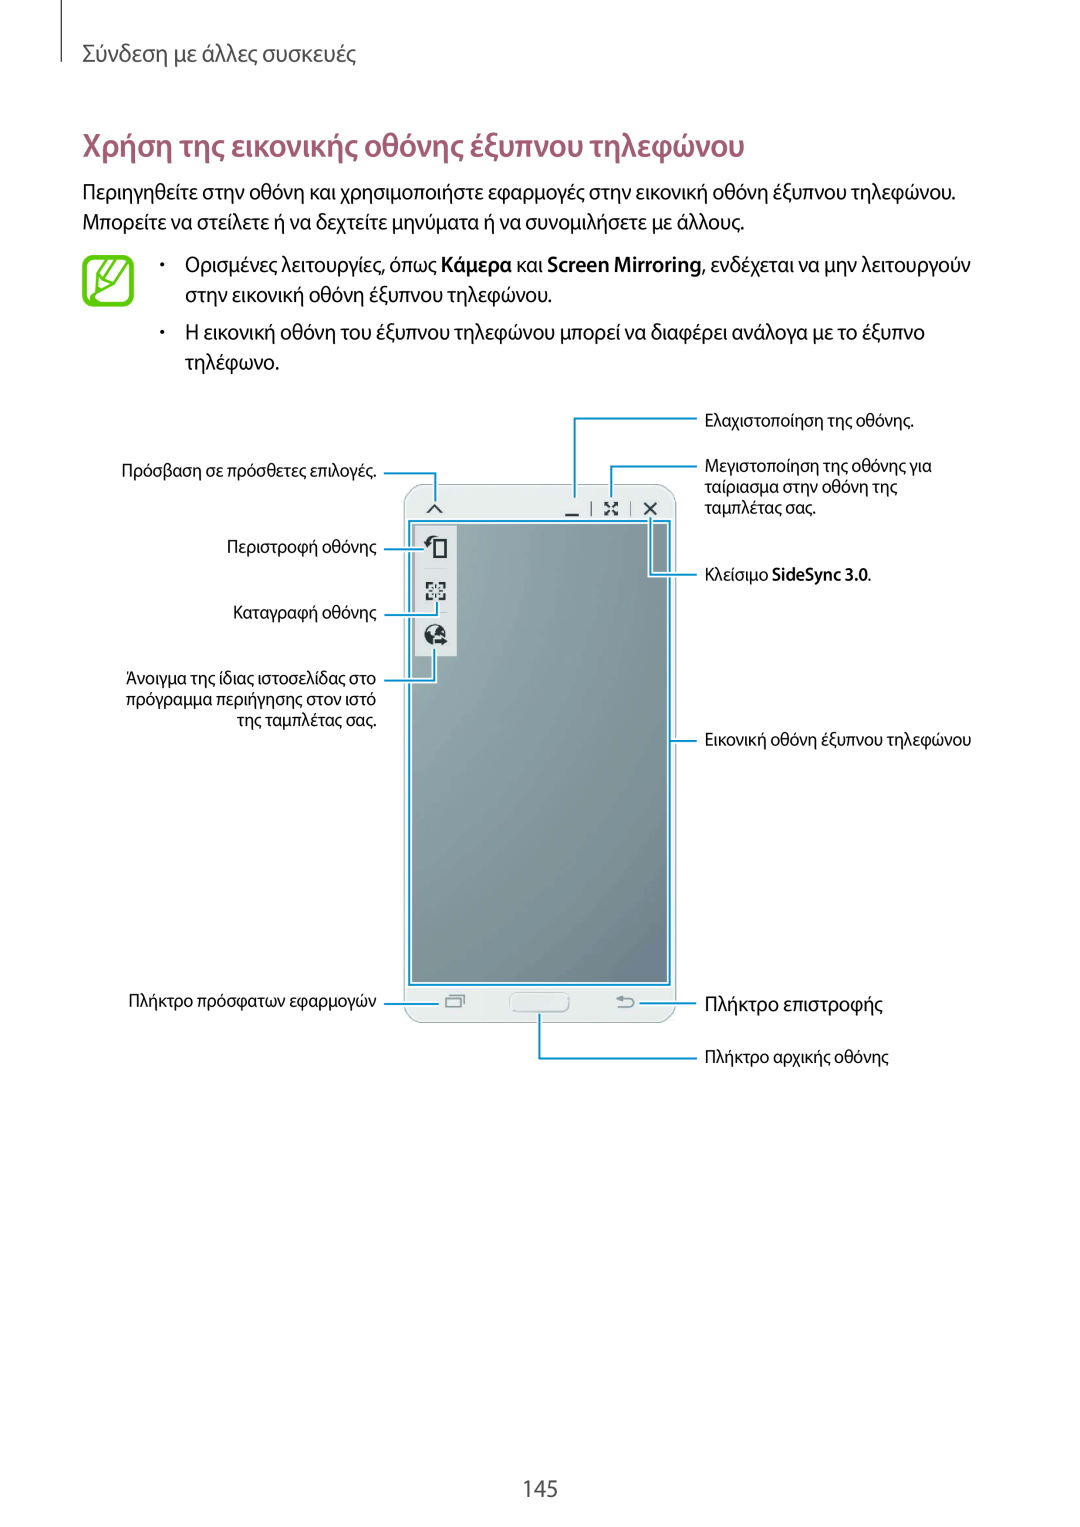 Samsung SM-T805NZWAEUR manual Χρήση της εικονικής οθόνης έξυπνου τηλεφώνου, Σύνδεση με άλλες συσκευές, Πλήκτρο επιστροφής 